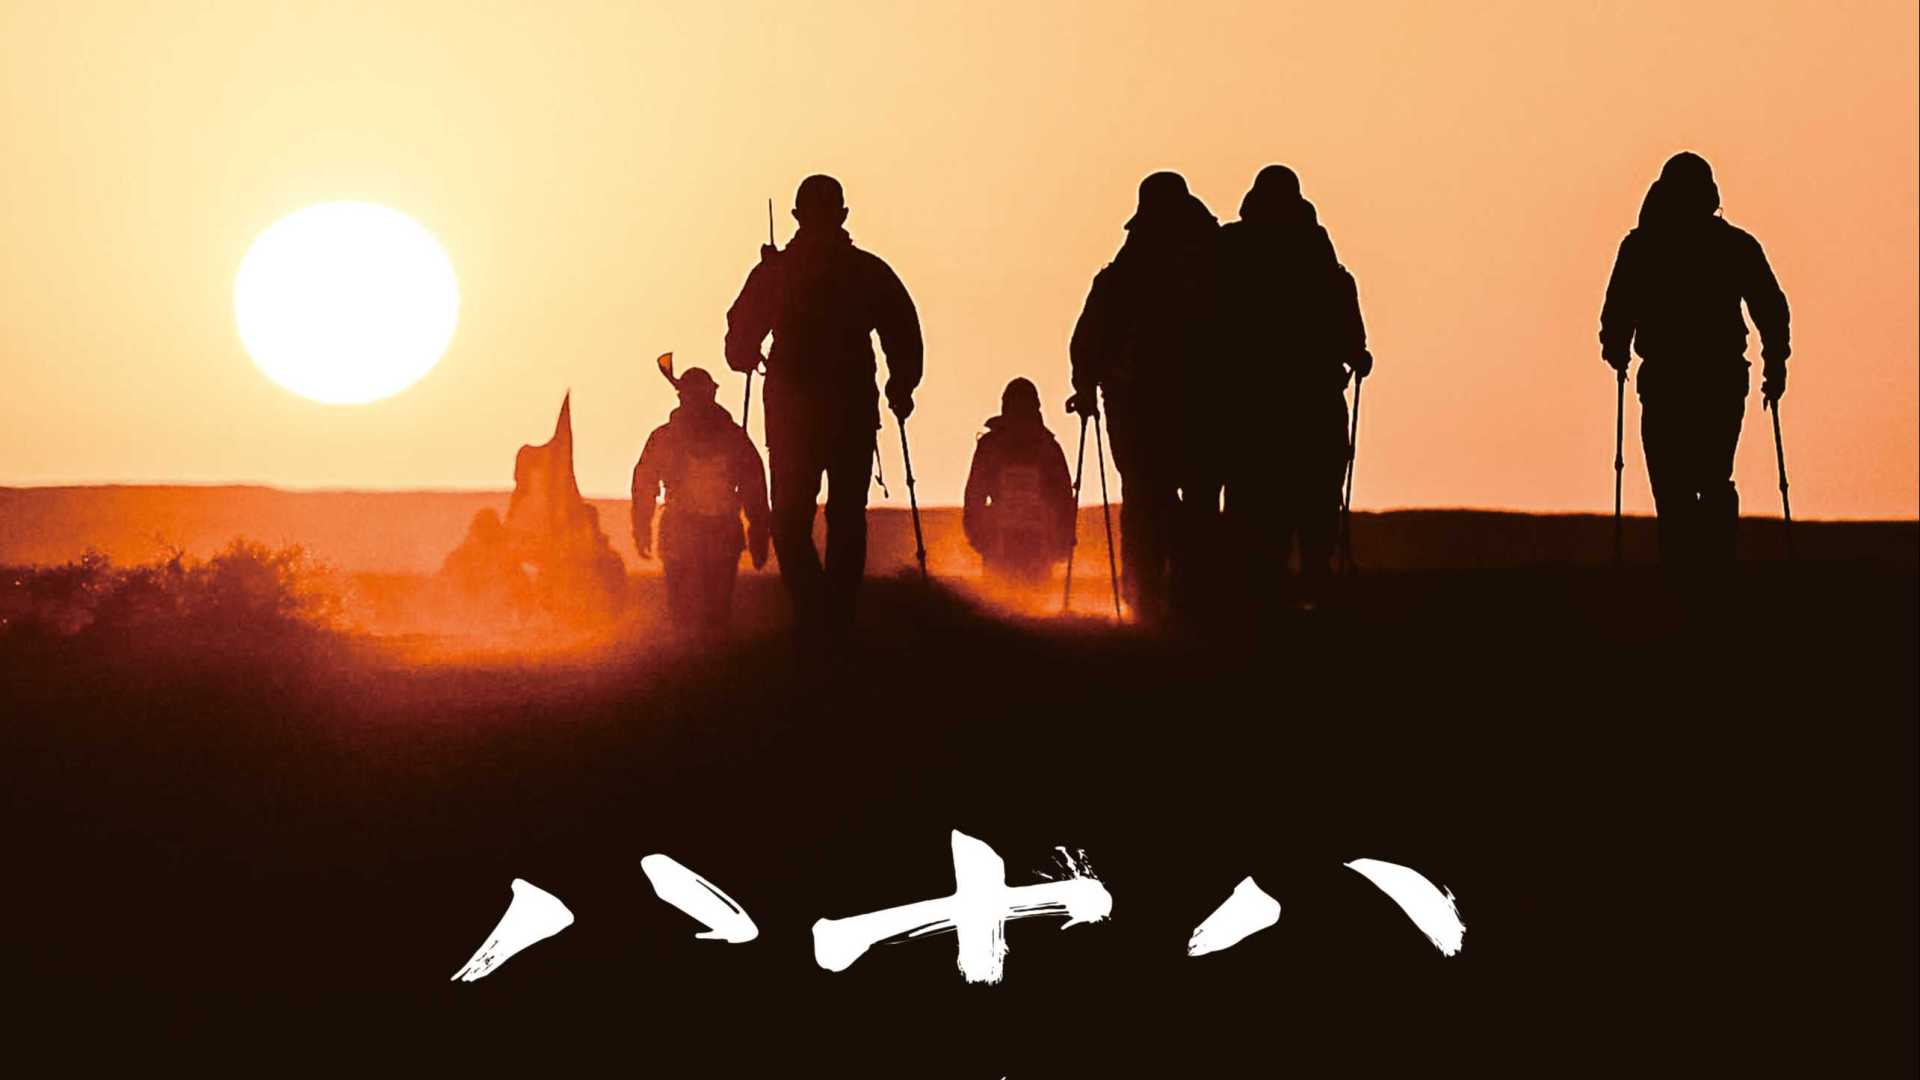 《八十八》——独角兽创业营戈壁八十八公里徒步挑战赛活动 | 系列记录电影